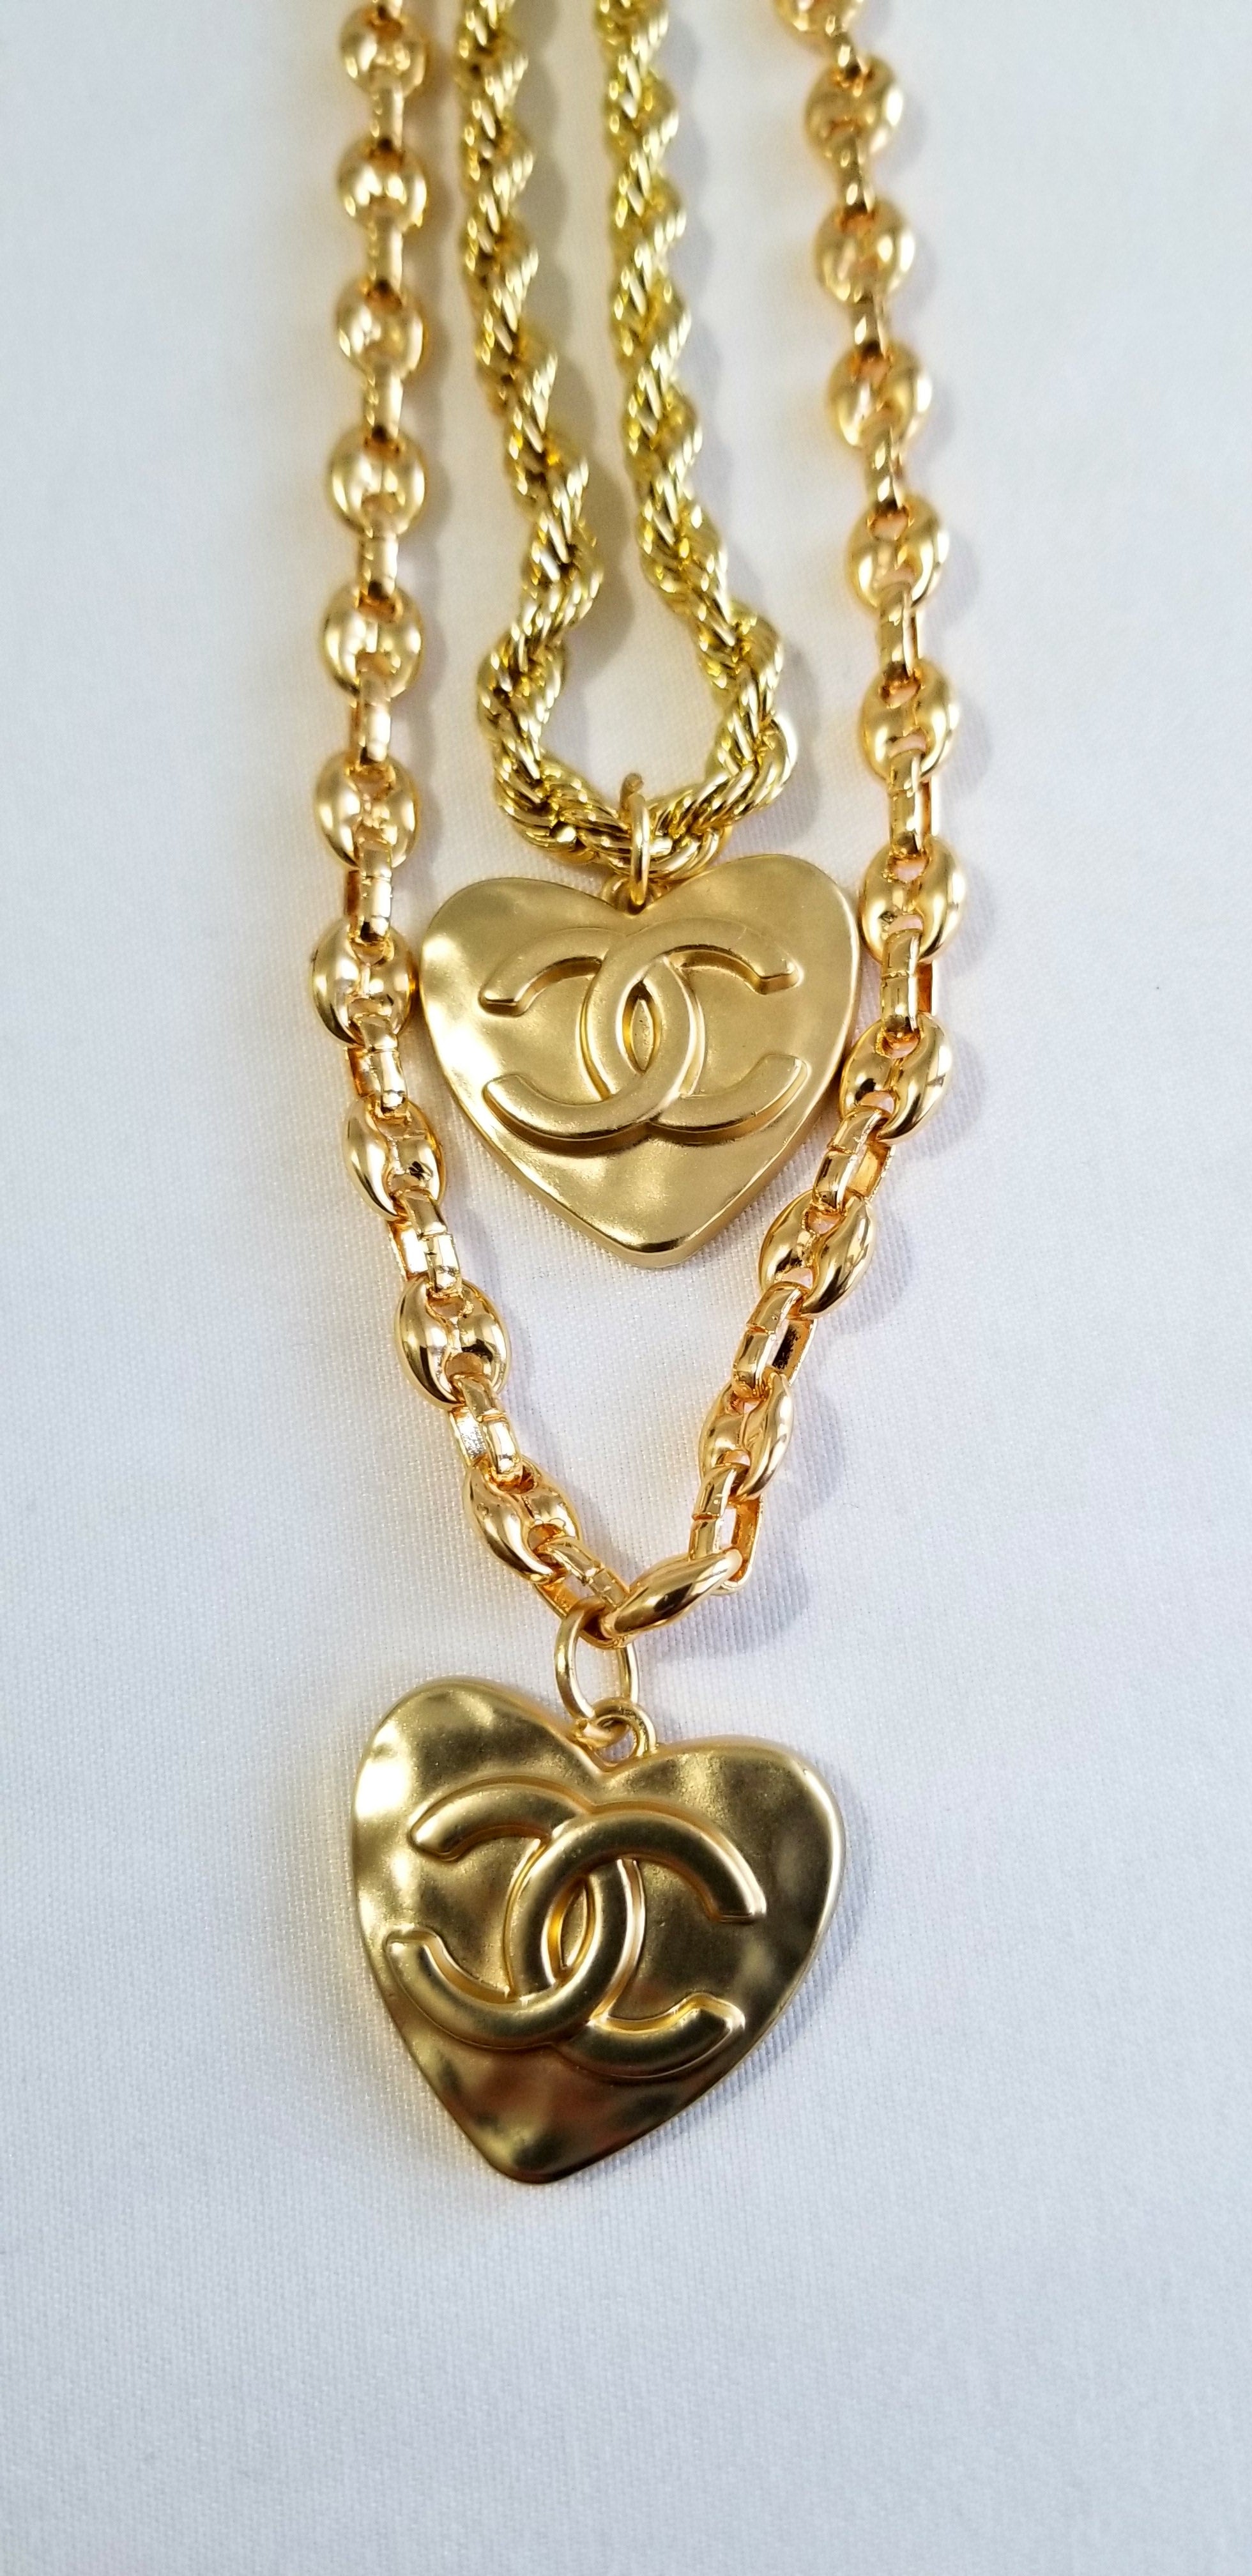 NIB 100%AUTH 23C Chanel Heart Crystal CC Brooch Gold-tone Hardware